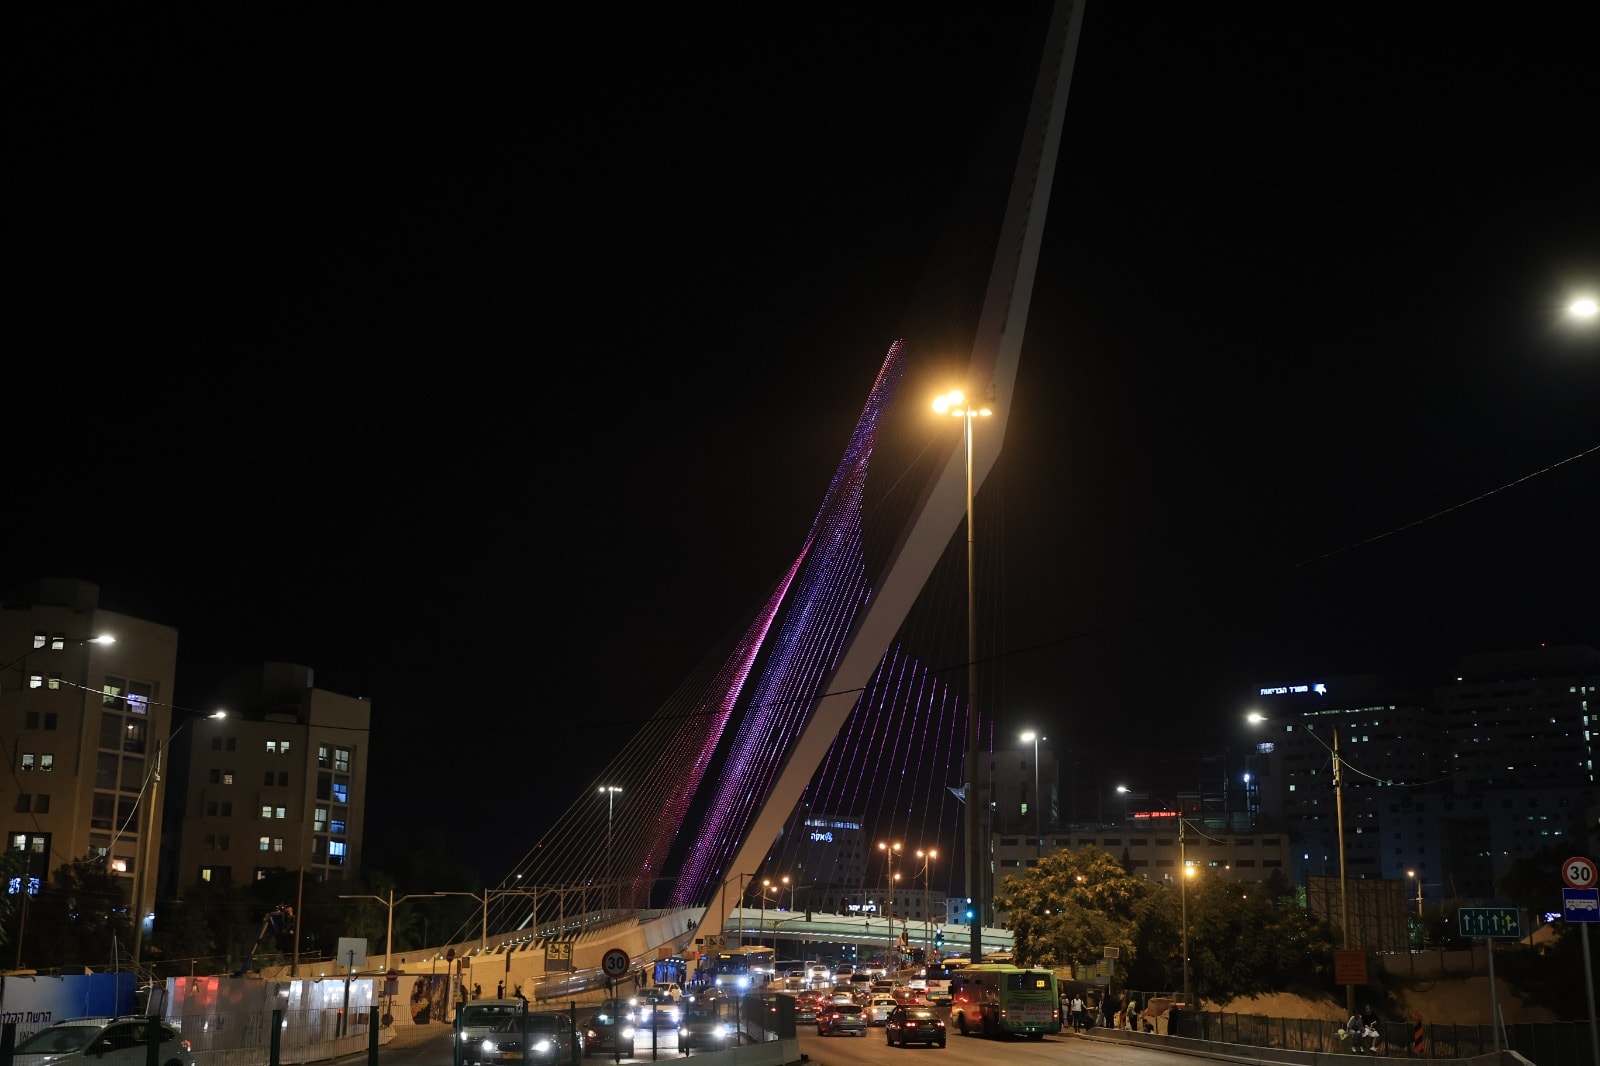 גשר המיתרים בכניסה לירושלים בלילה (צילום: יוליה ברזון)